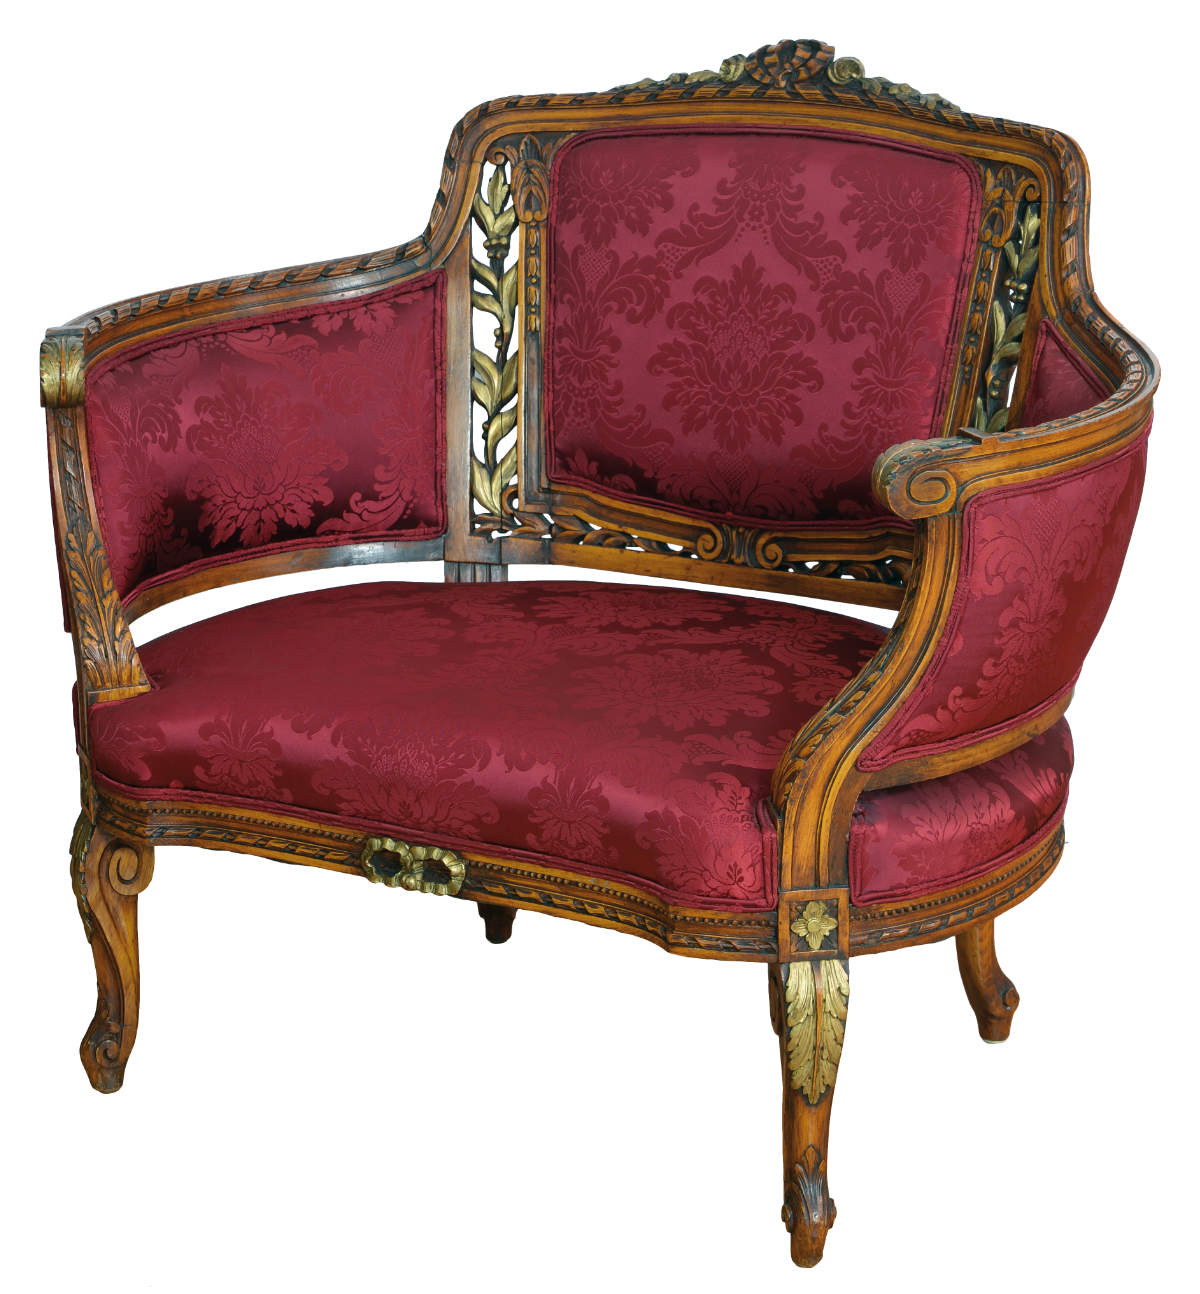 Antikes Bänkchen in Cabriolet-Form, aus dem 18. Jahrhundert, teilvergoldet, mit rotem Stoffbezug, Frontalansicht.